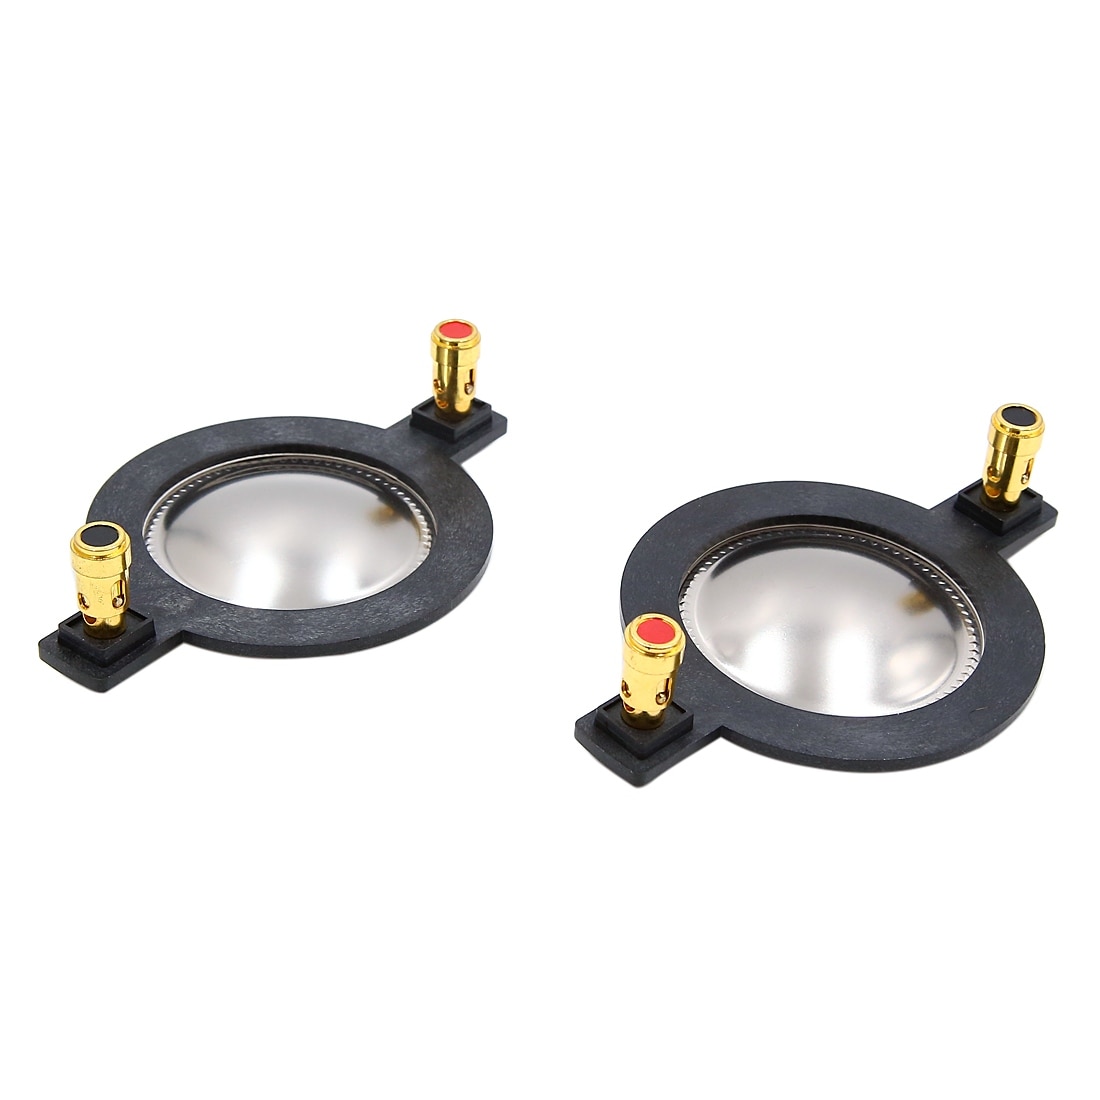 2pcs 44.4mm Sound Speaker Diaphragm Car Voice Coil Replacement w Copper Pillar - Black,Silver Tone